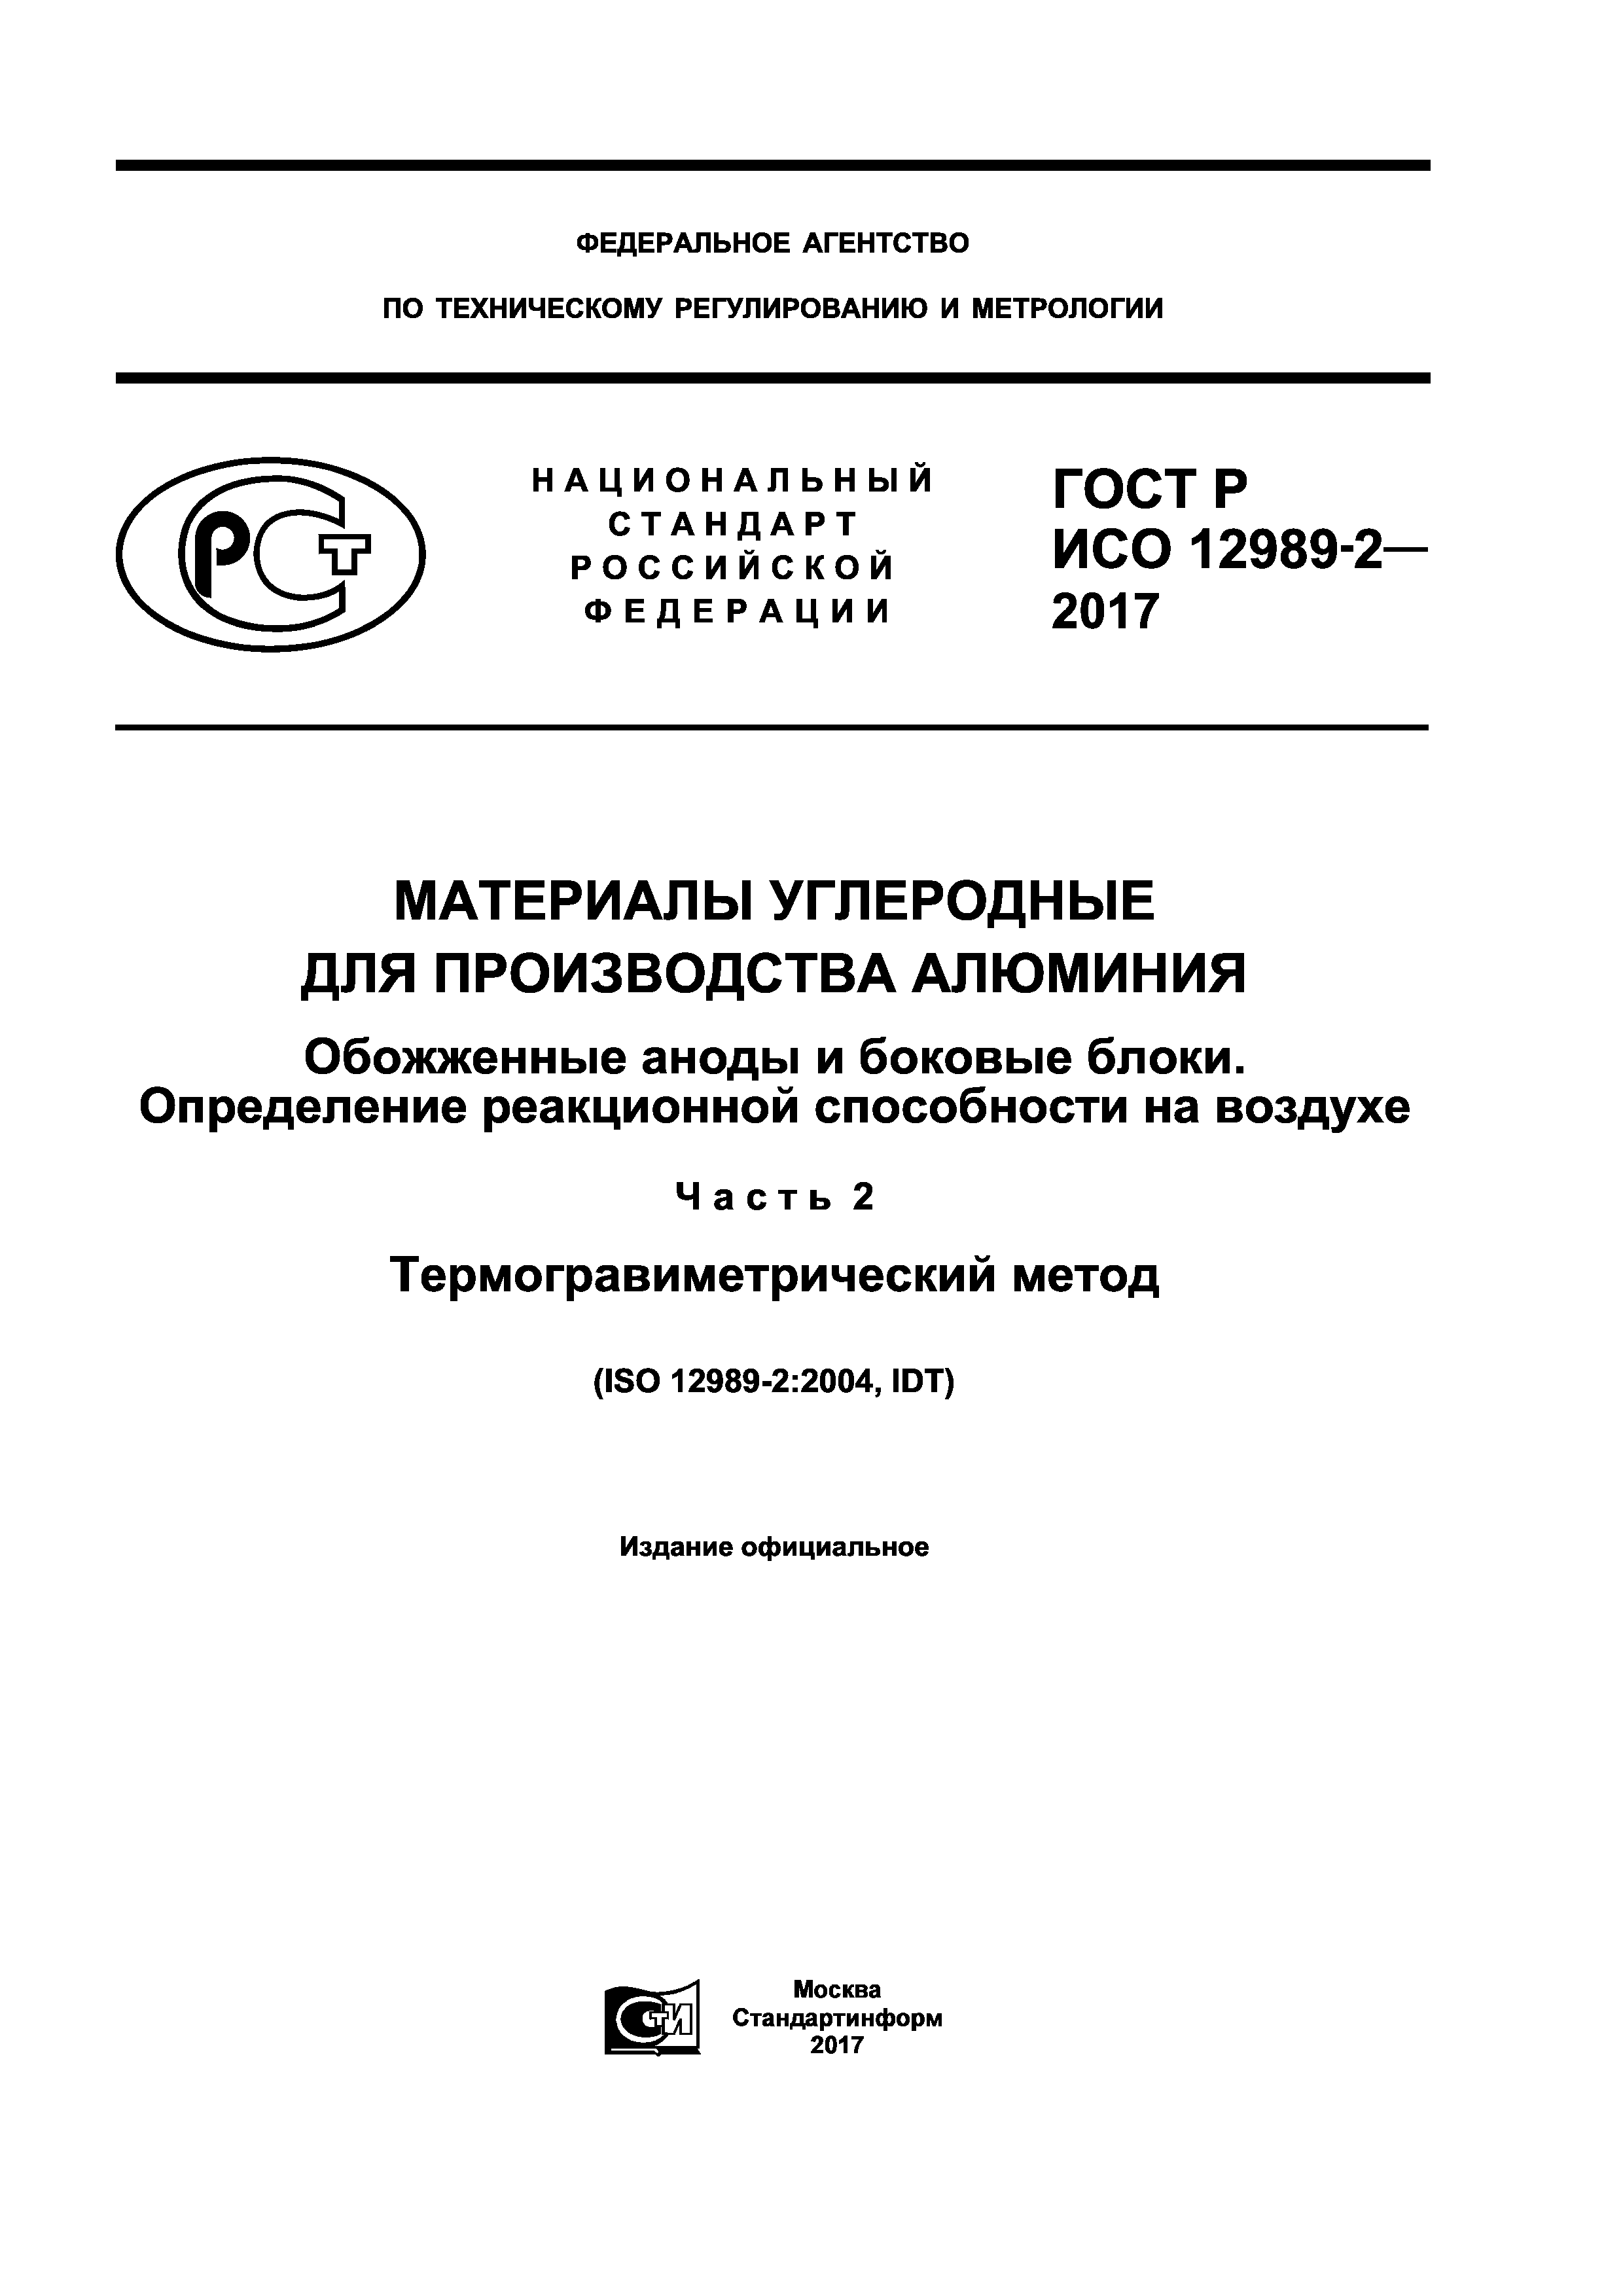 ГОСТ Р ИСО 12989-2-2017